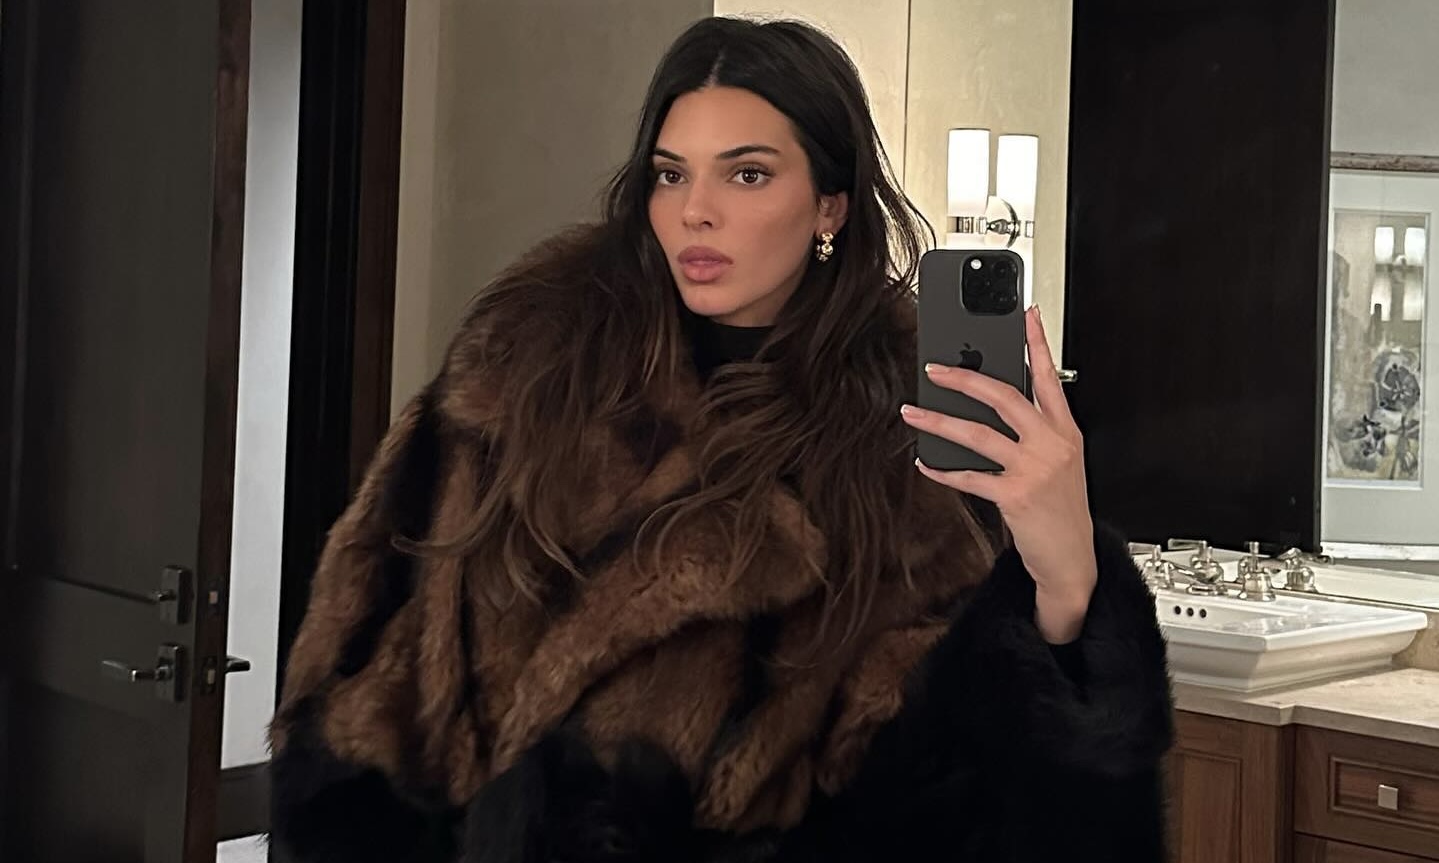 More than a Kardashian: Singer LIZZO launches shapewear brand